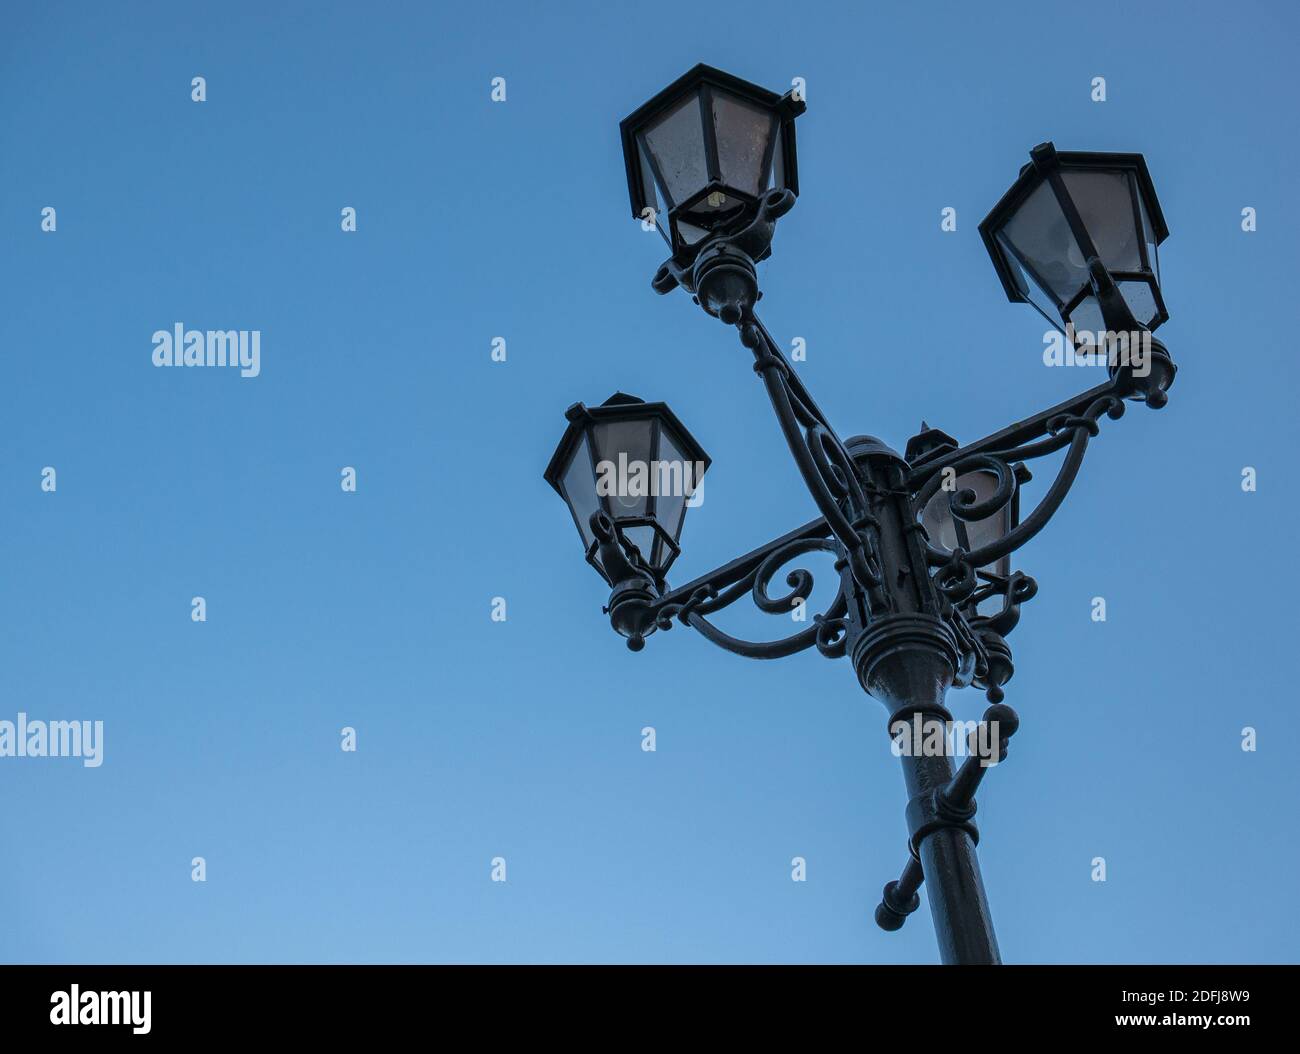 Una vieja lámpara callejera de hierro fundido con cuatro hermosas lámparas Foto de stock